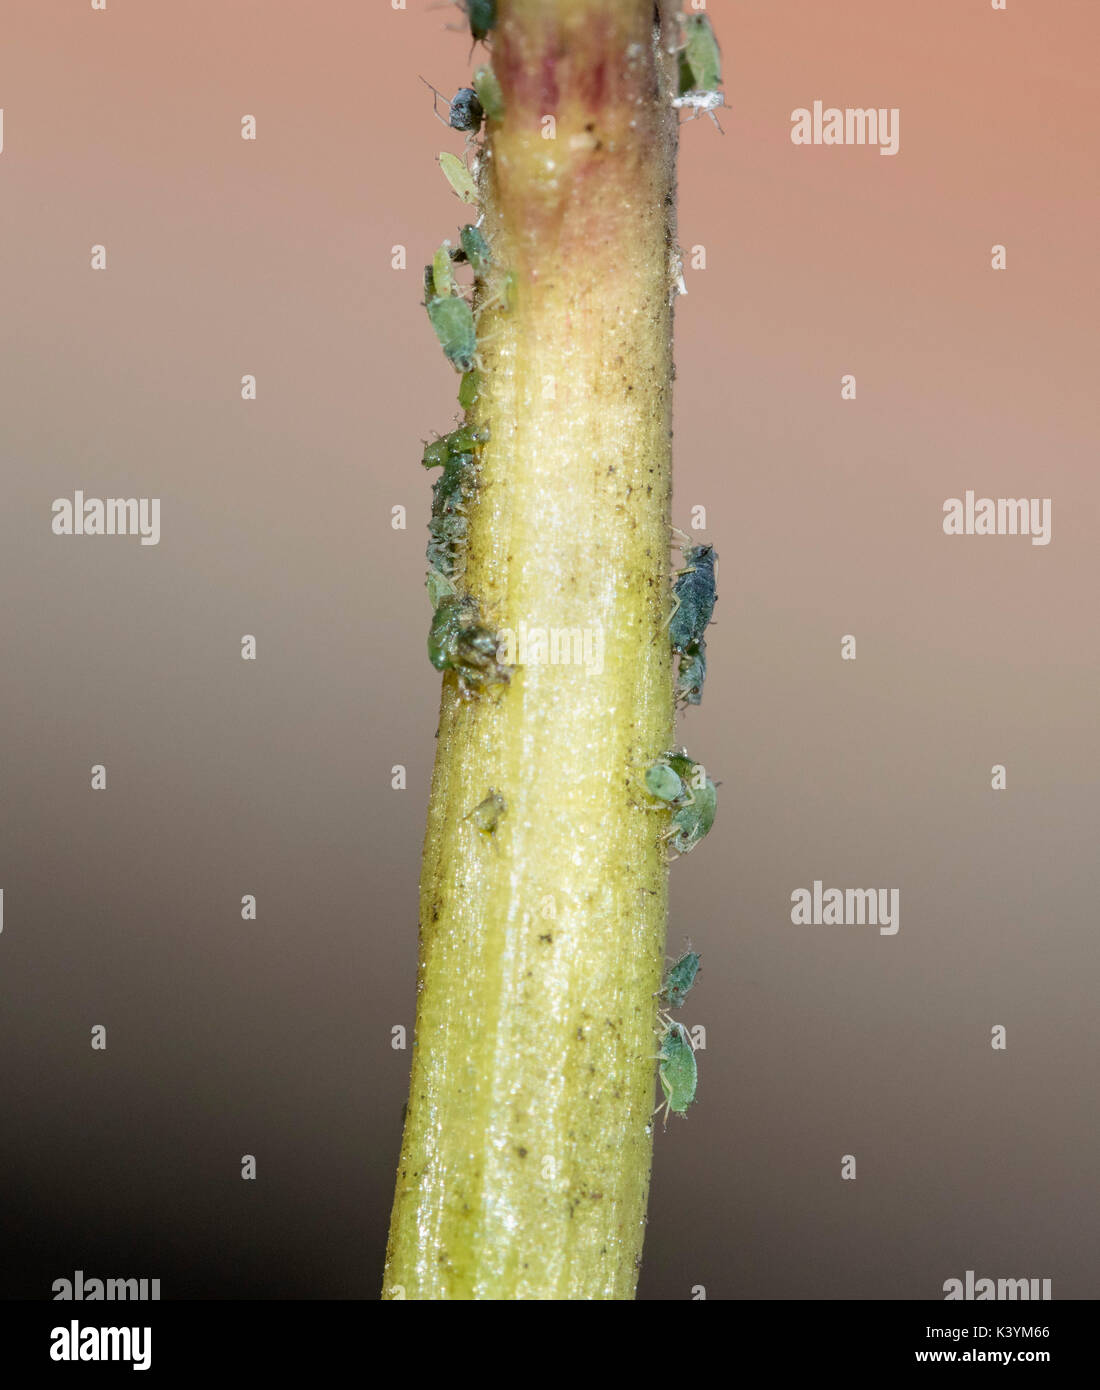 Afidi, piante insetti pidocchi e bug, su un impianto a foglia e stelo, macro Foto Stock